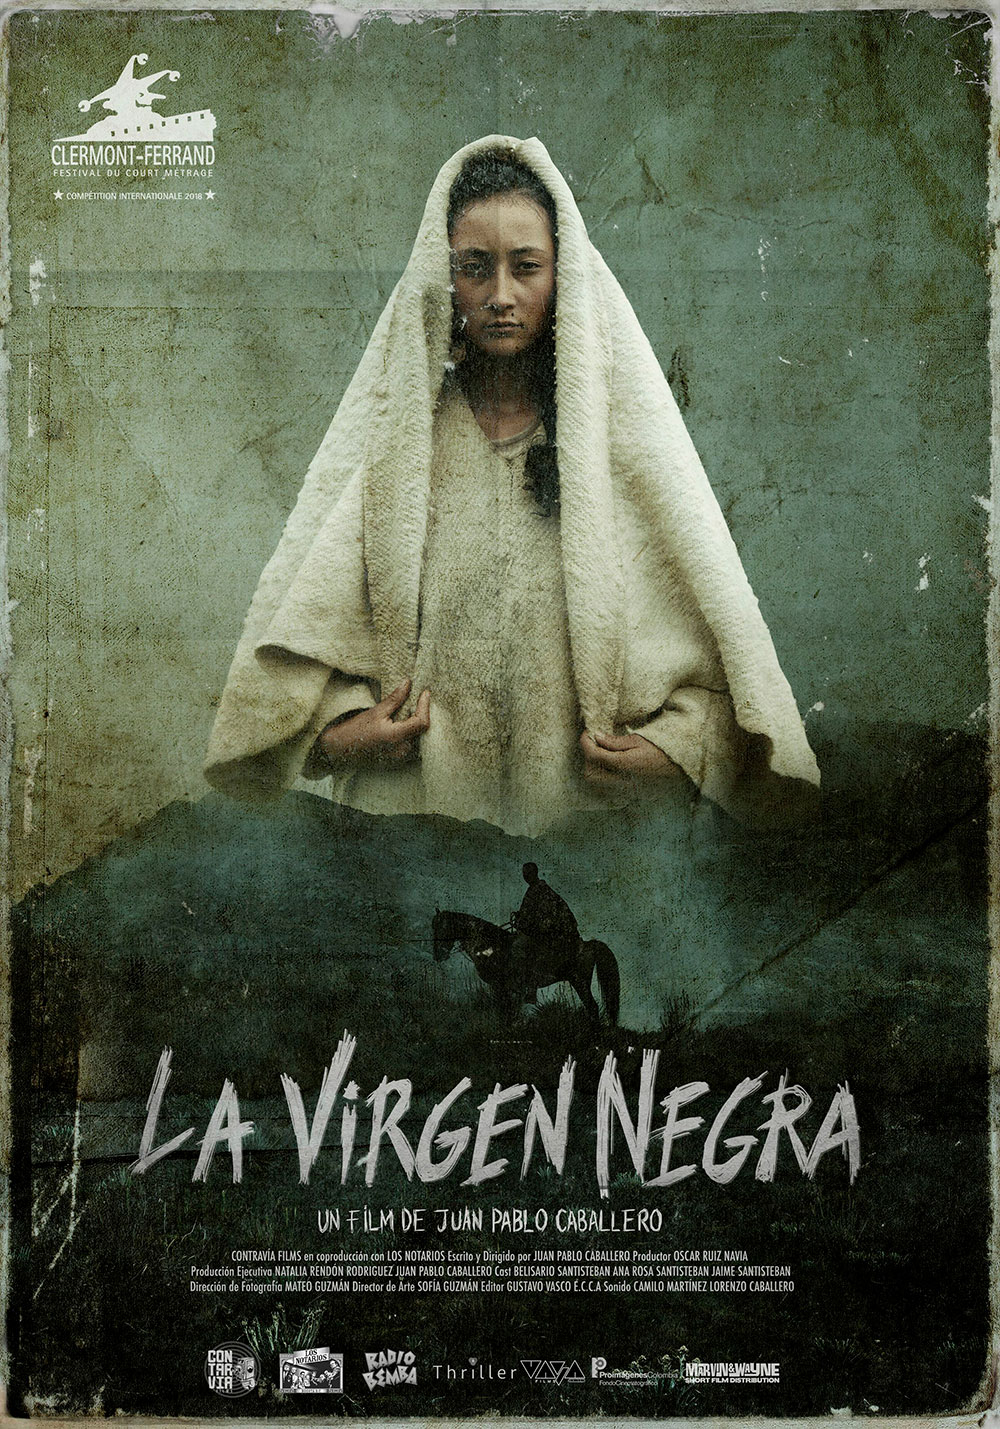 Cine colombiano: LA VIRGEN NEGRA | Proimágenes Colombia